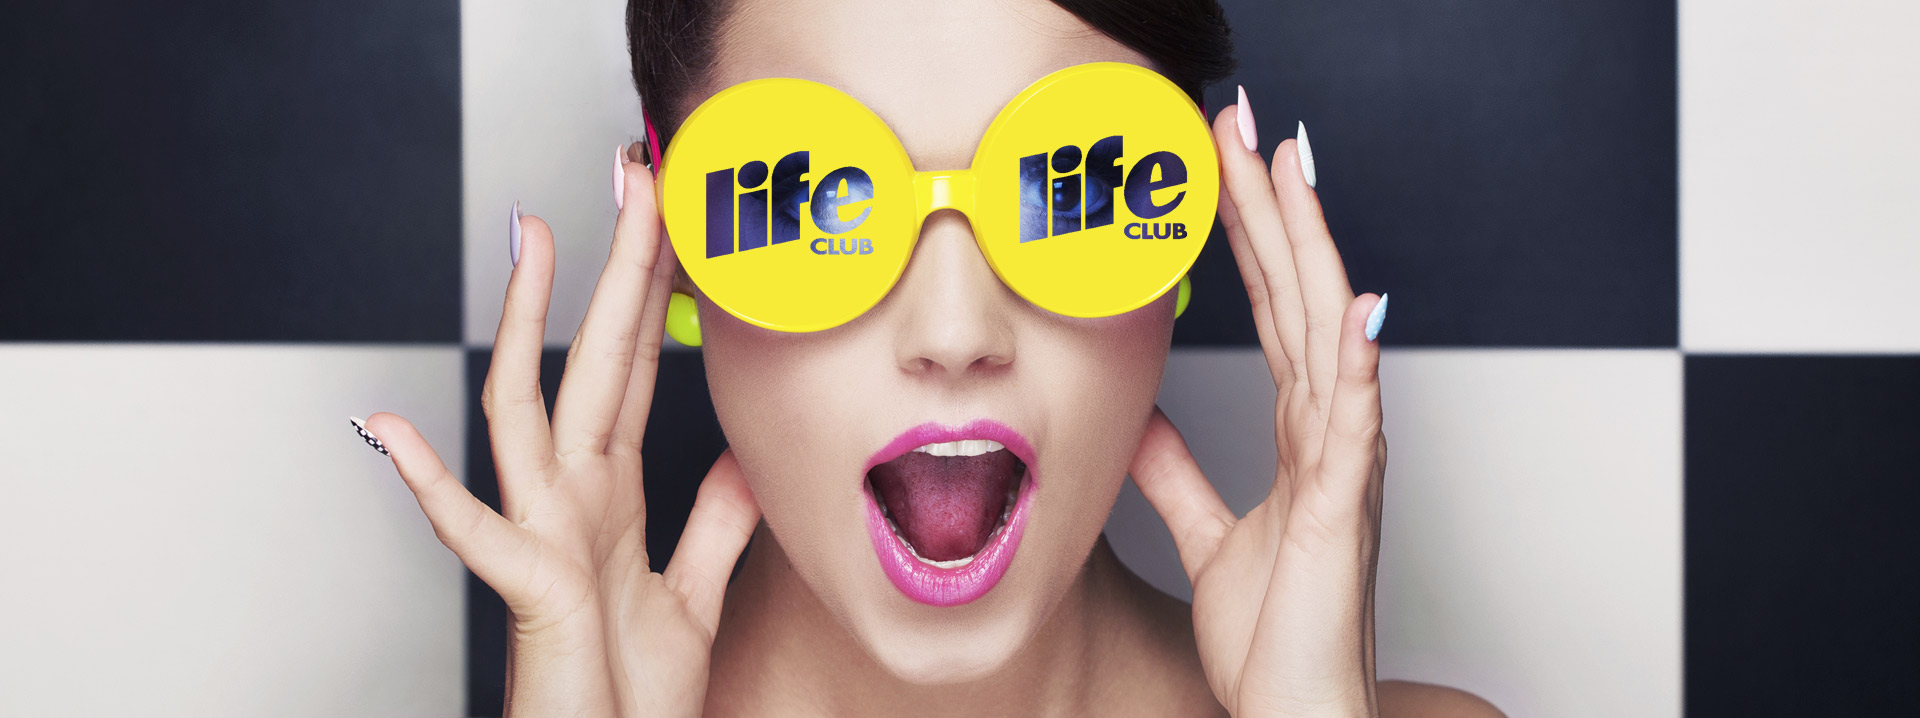 Life Club Discoteca